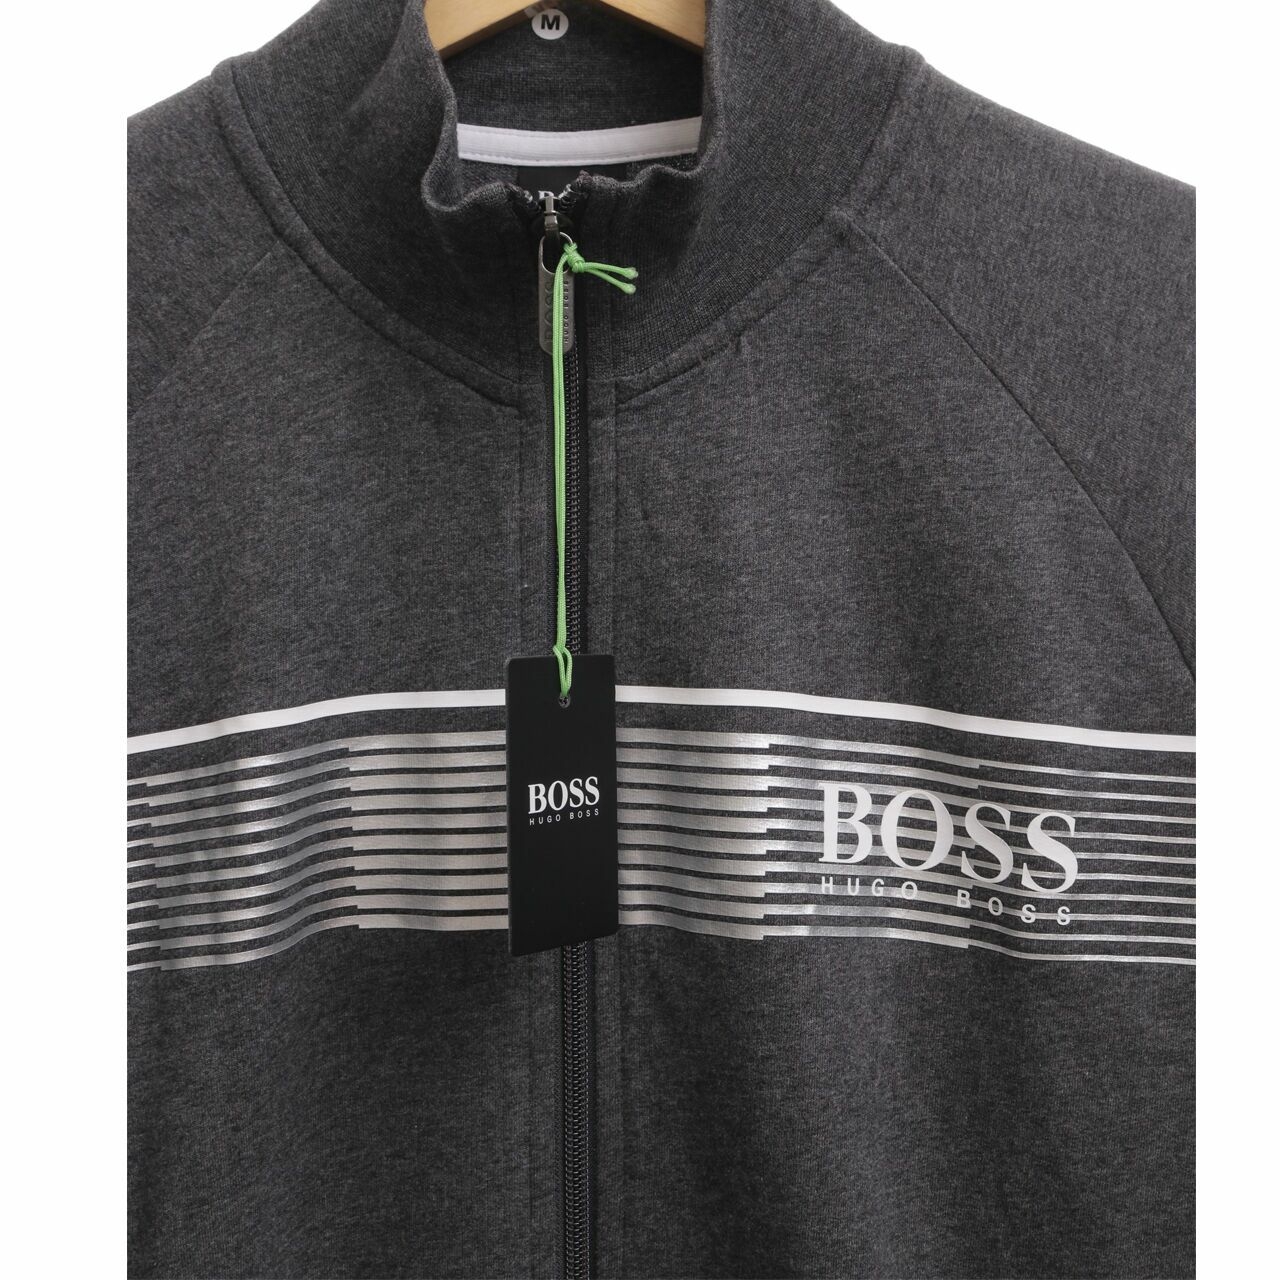 Boss by Hugo Boss Zipper Authentic Jacket Z In Grey M